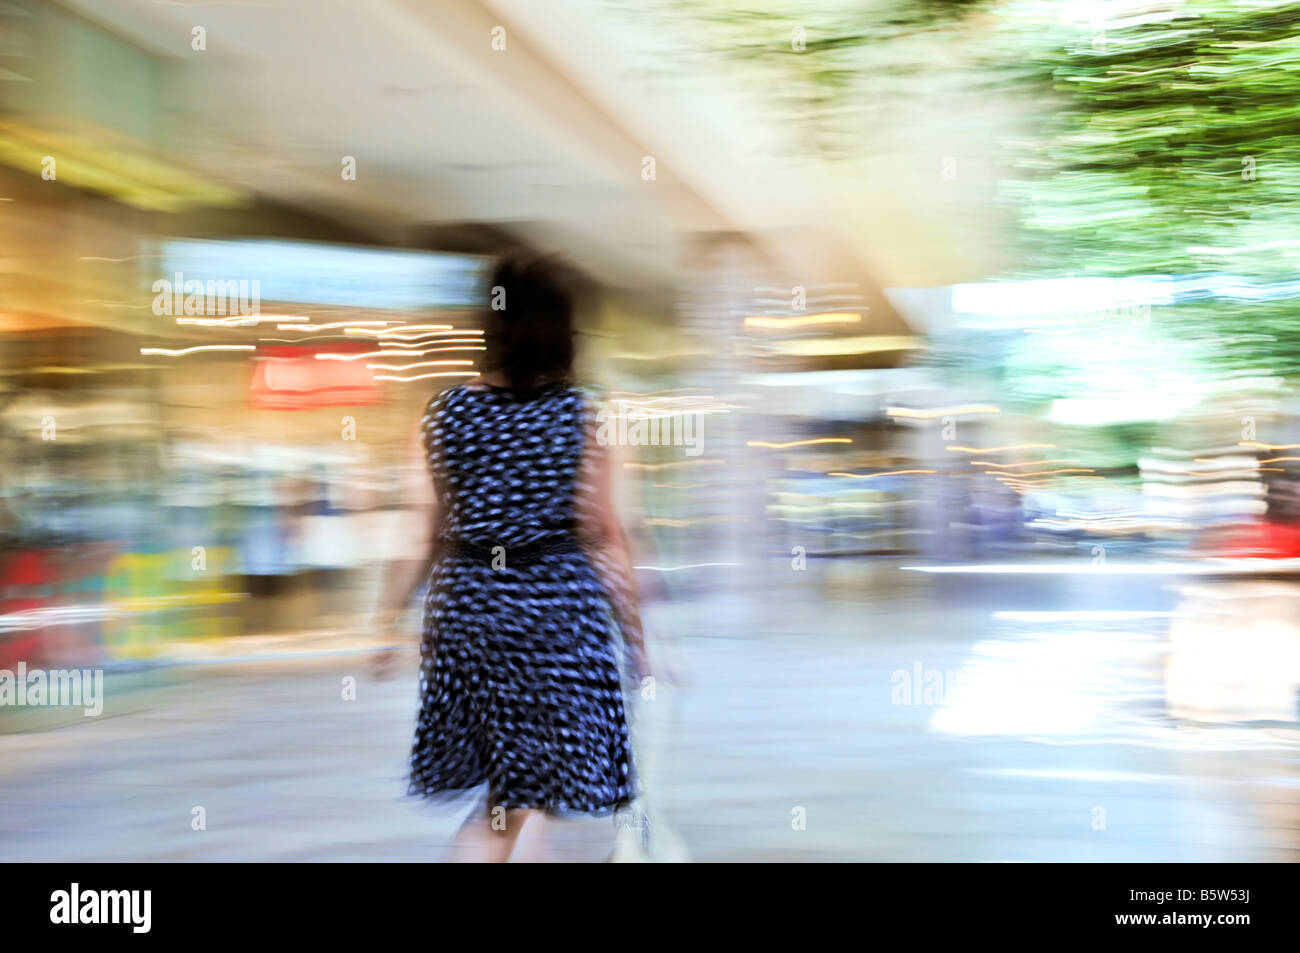 Frau shopping in einem Einkaufszentrum Schuss absichtlich in der Kamera schwenken Bewegungsunschärfe Stockfoto